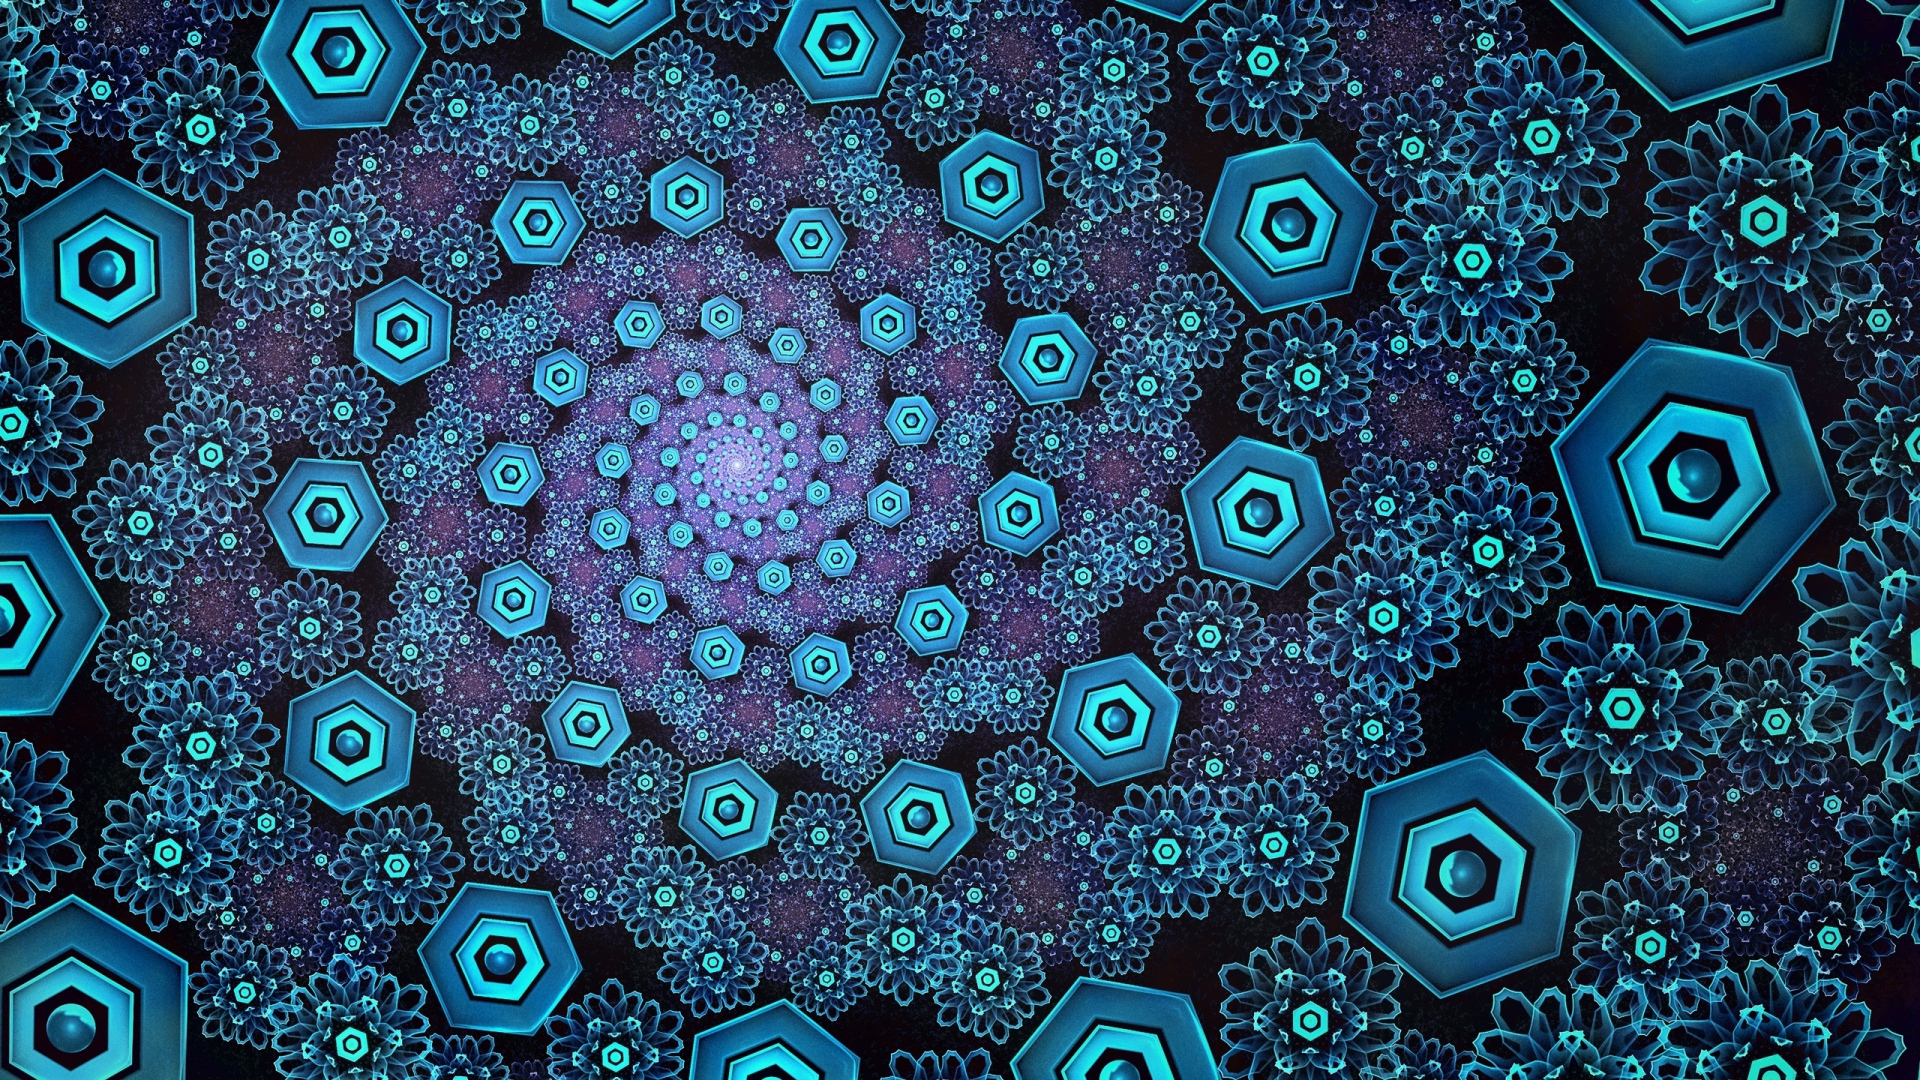 Blue Optical Illusion Wallpaper - Facebook Cover Photos For Aboriginal - HD Wallpaper 